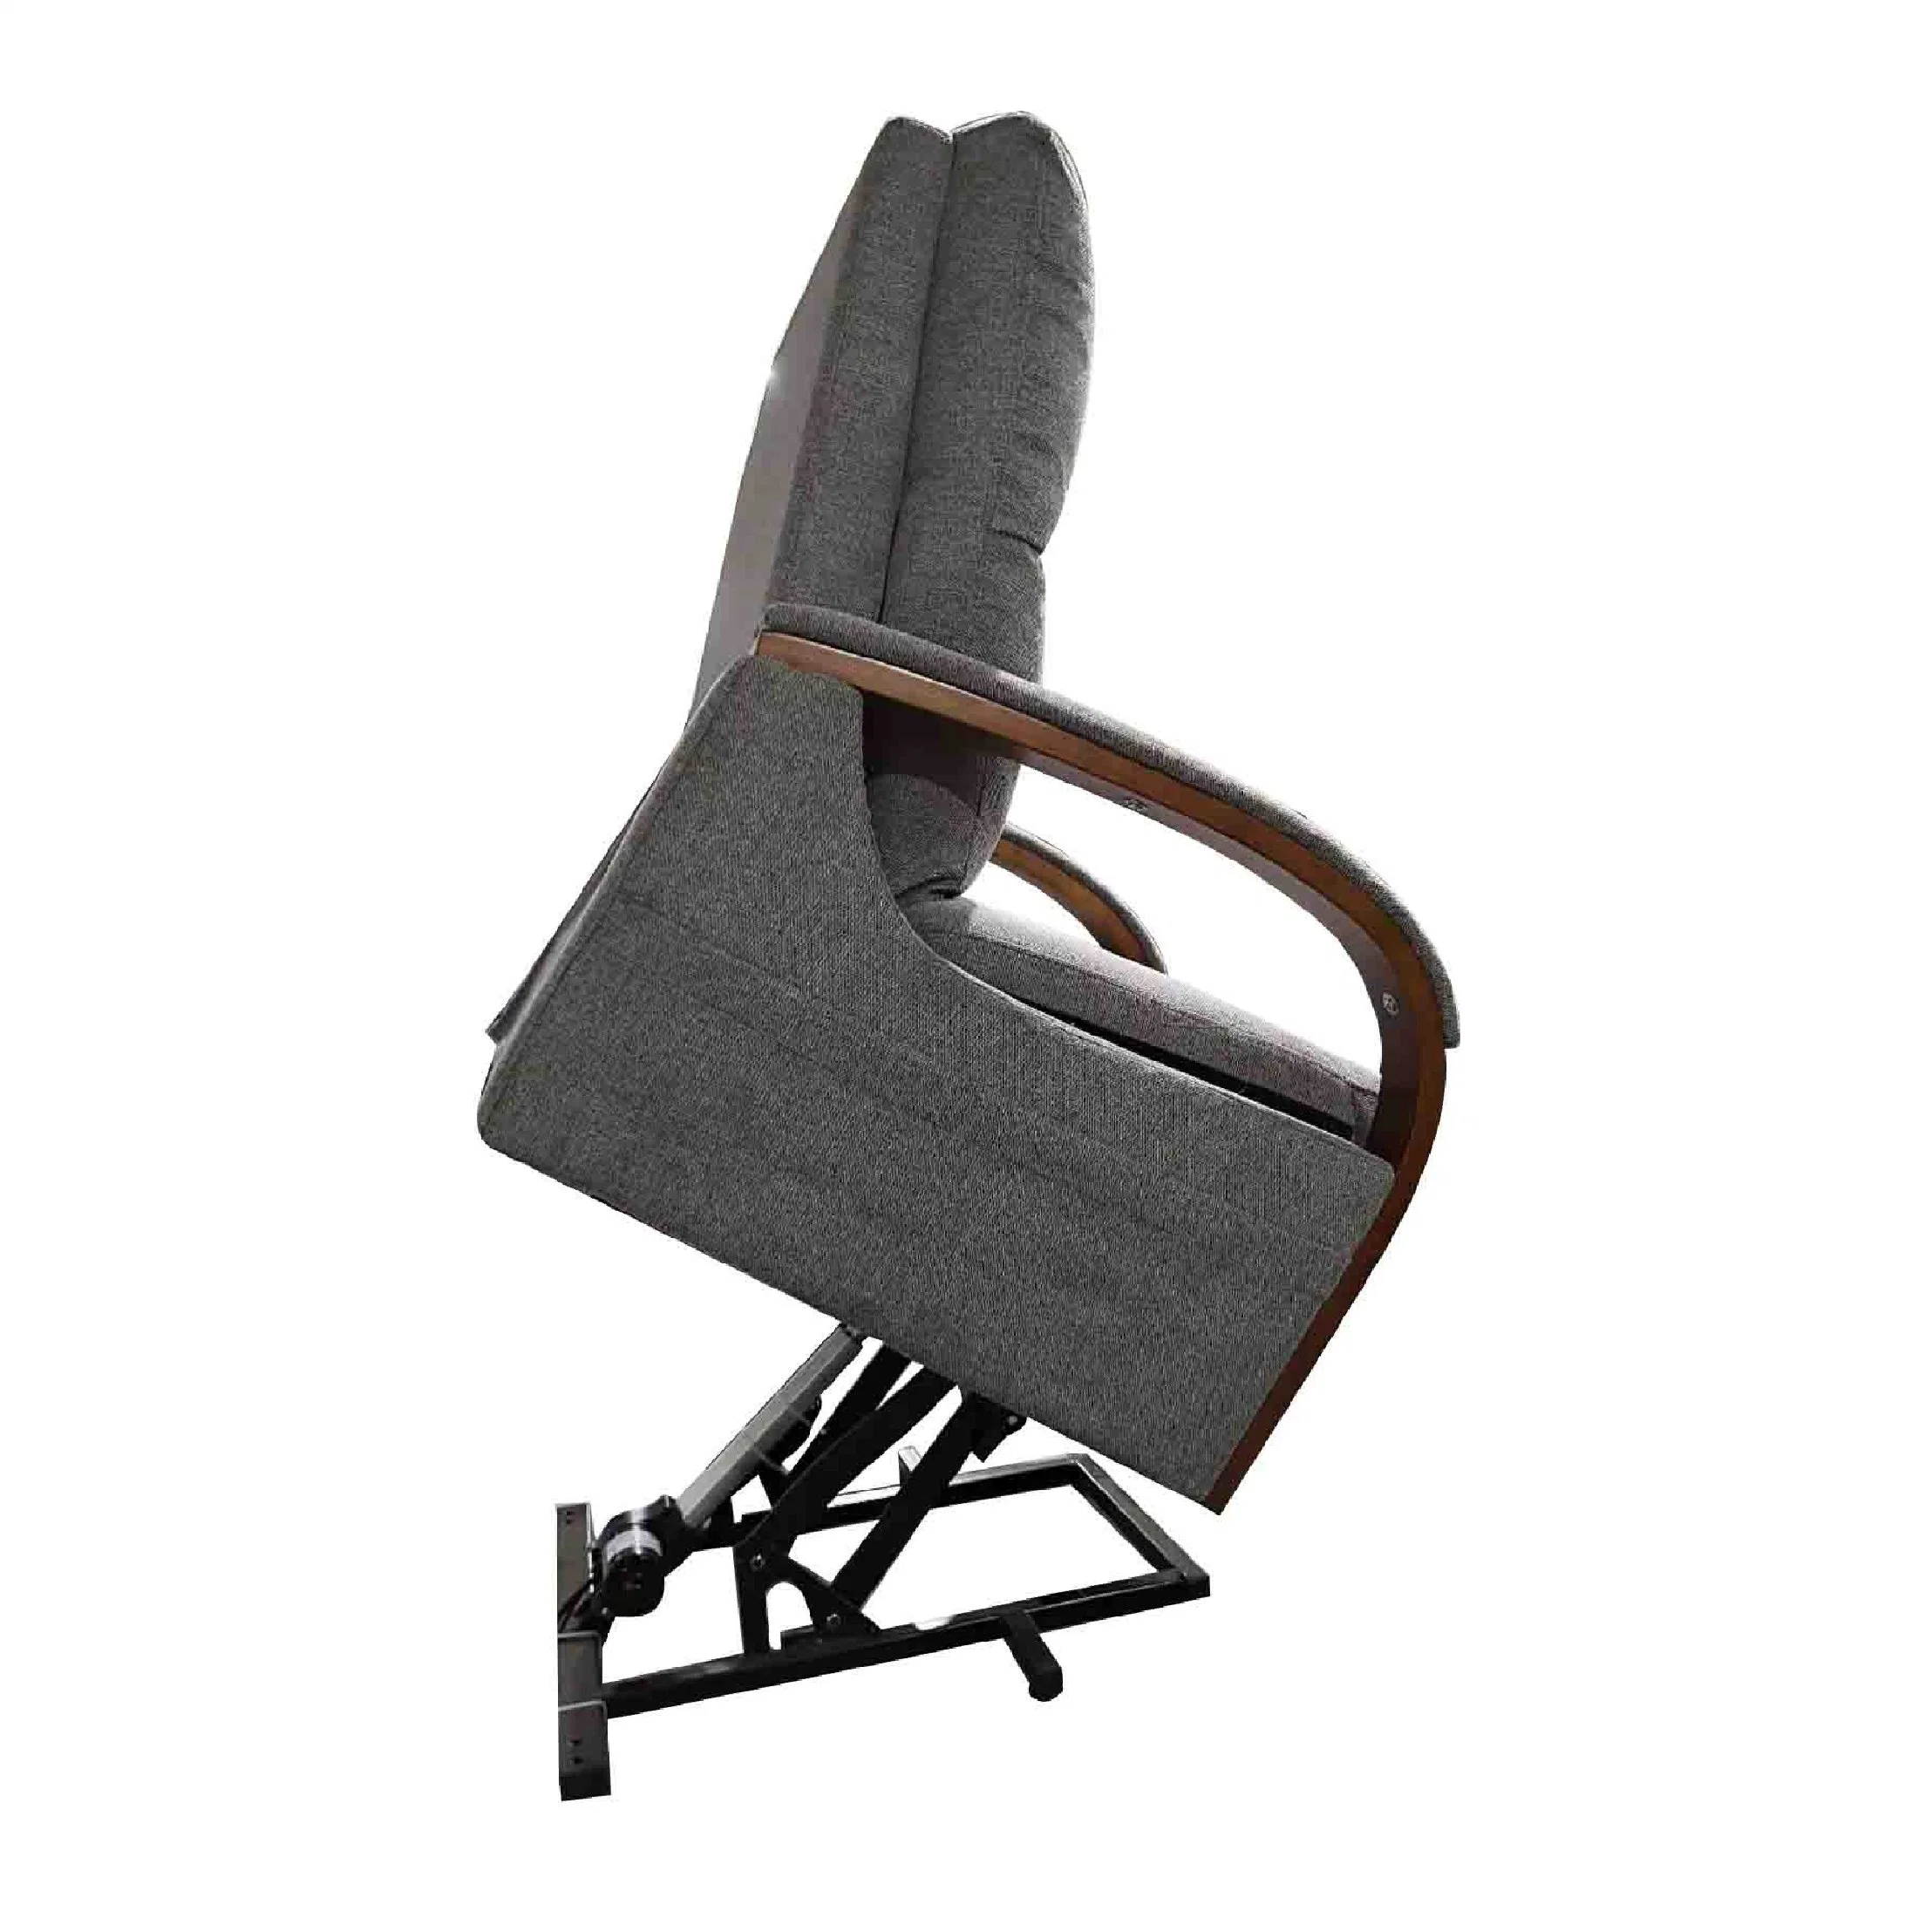 Jky Furniture Air Leather Power Riser Lift Recliner Chair with Massage Function for The Elderly and Disabled

Jky Meubles Fauteuil releveur électrique en cuir Air avec fonction de massage pour les personnes âgées et handicapées